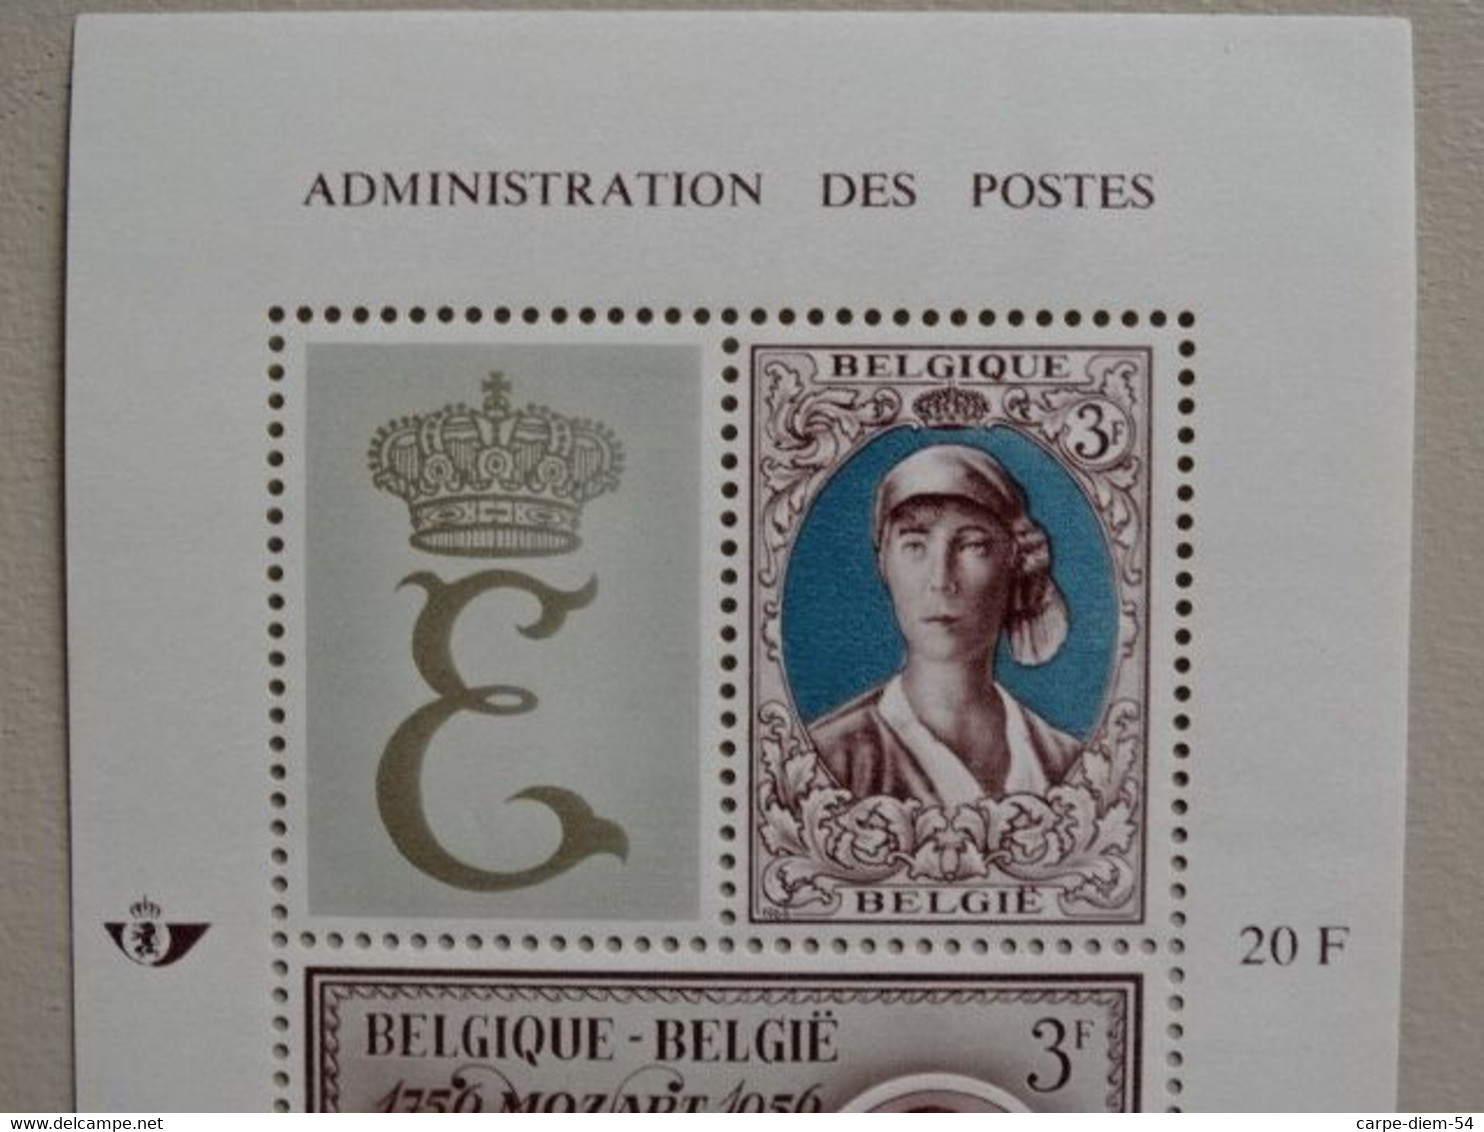 Belgique - 2 Feuillets Non Oblitérés - 2 Timbres De 3 Francs Belges Chacun - Reine Elisabeth - 1966 - 1961-1970